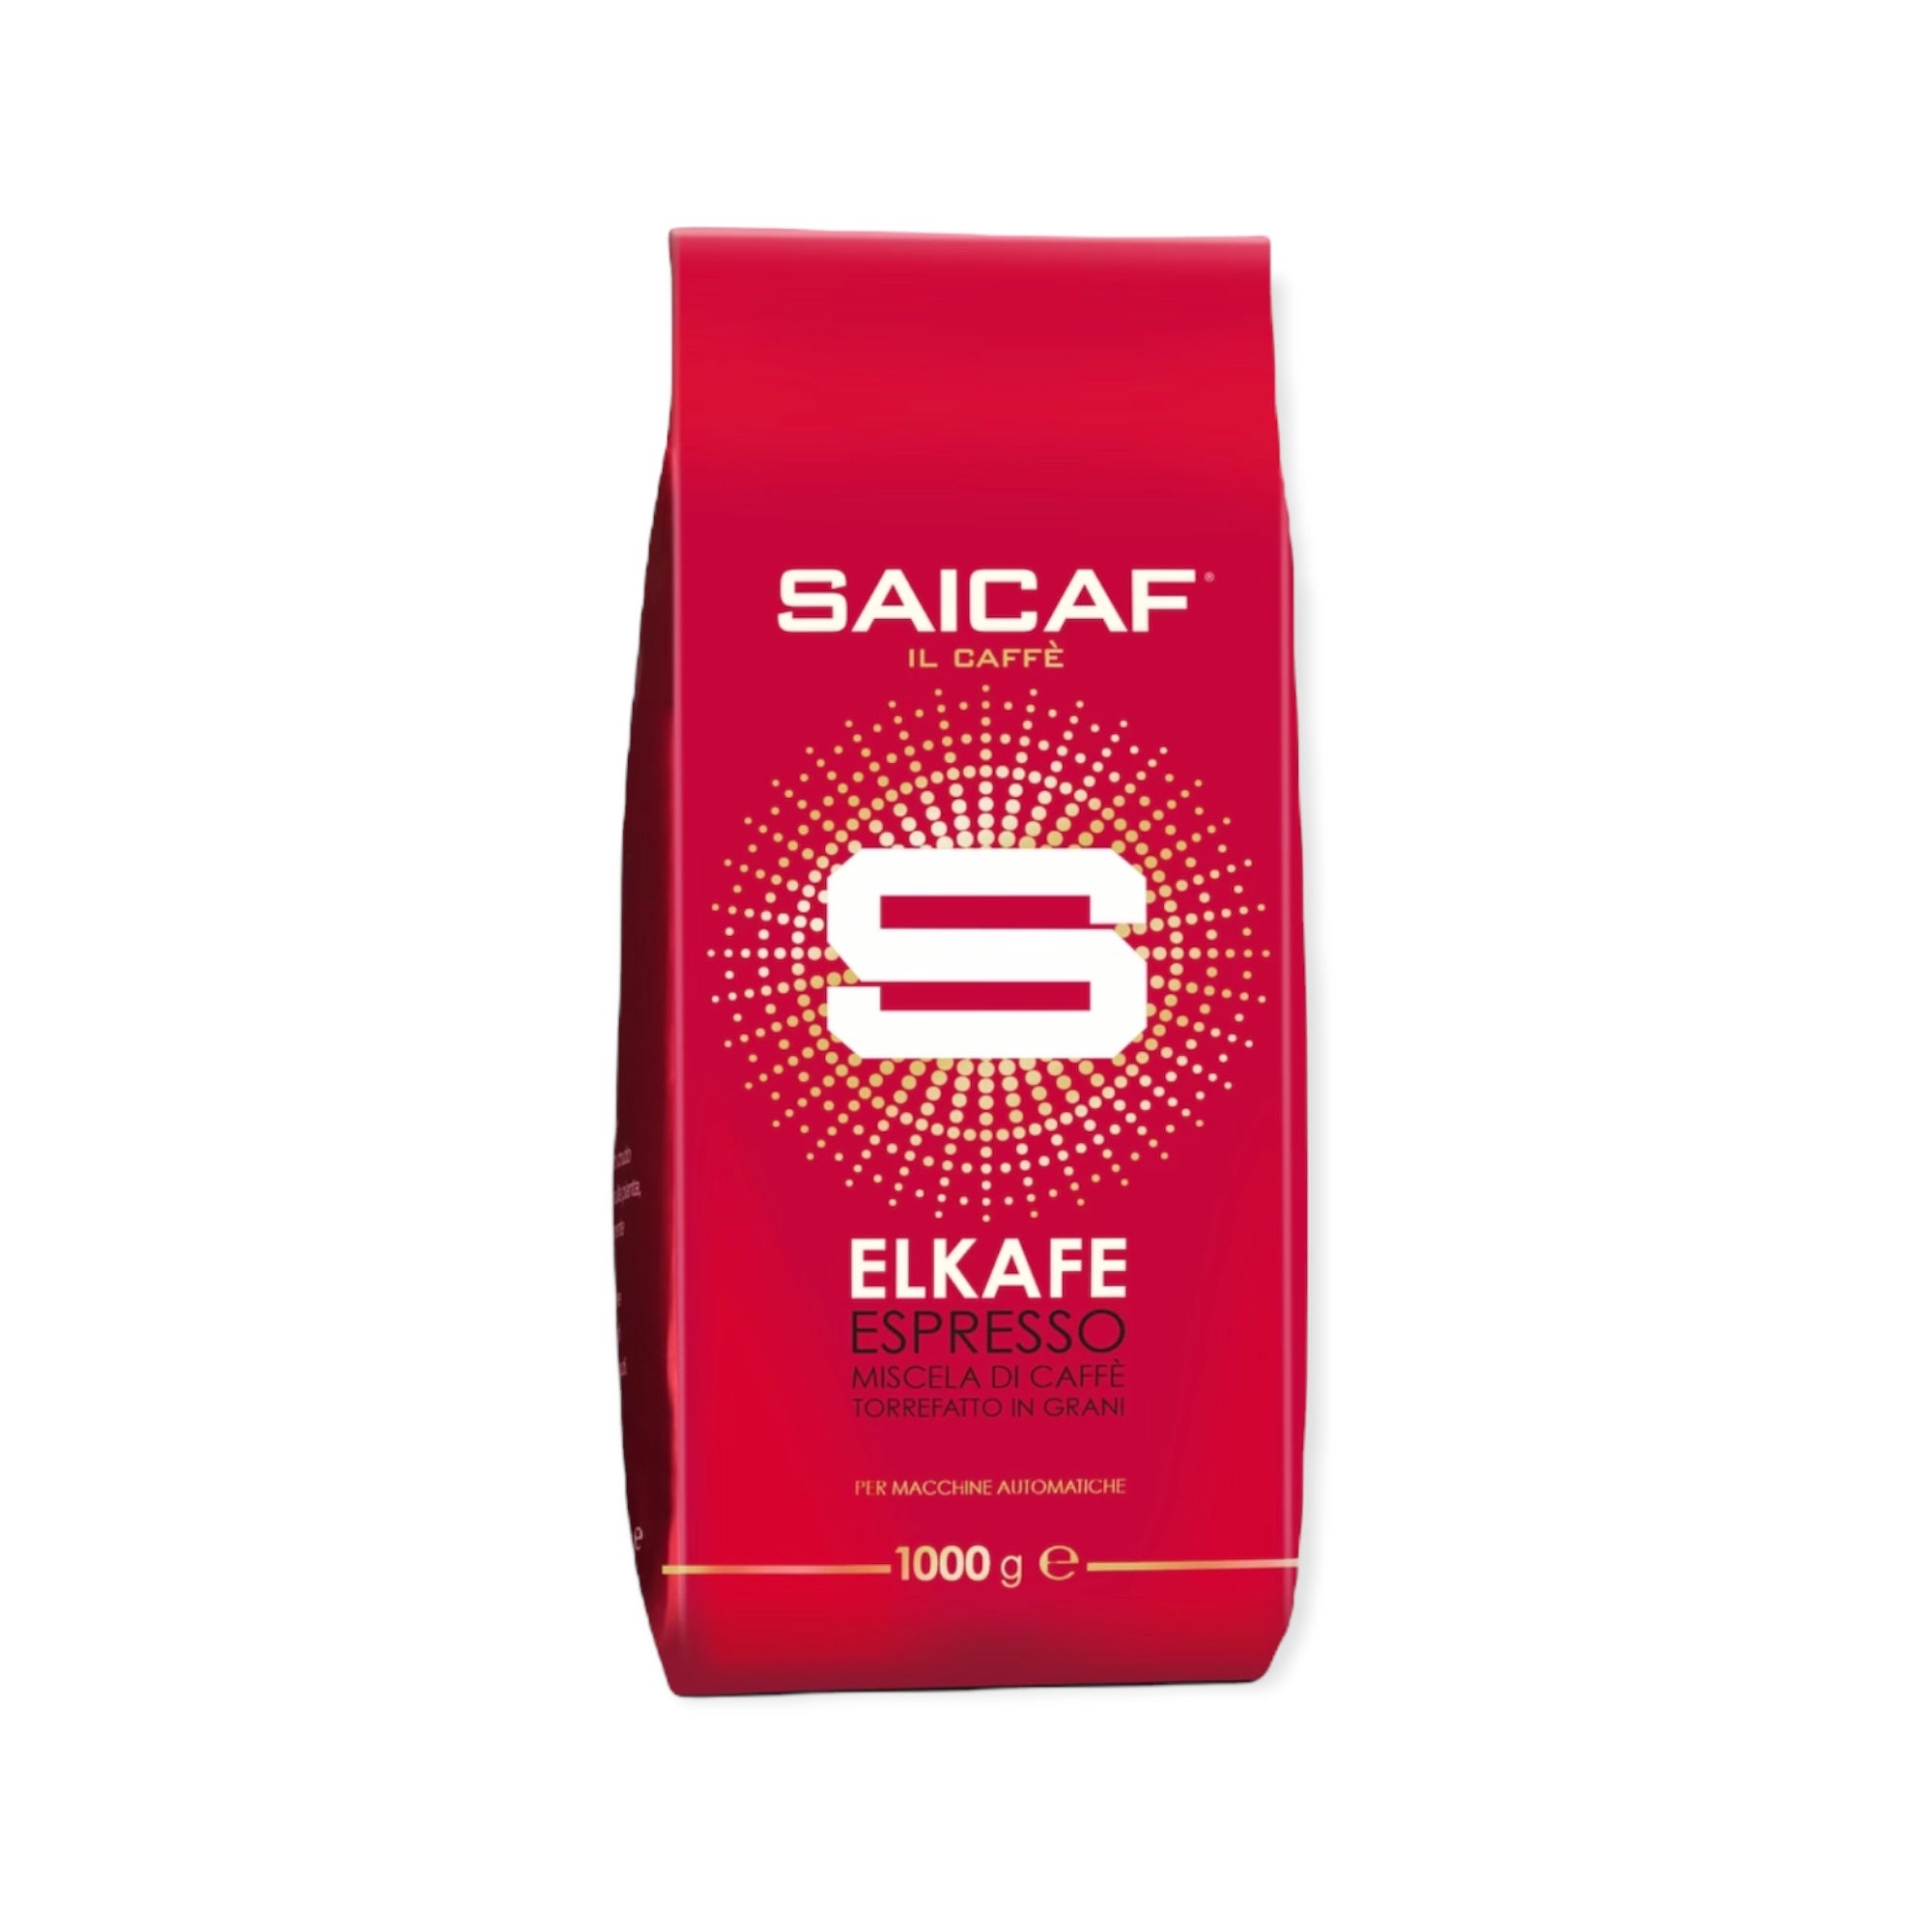 Saicaf Elkafe Whole Beans Espresso 2.2lb